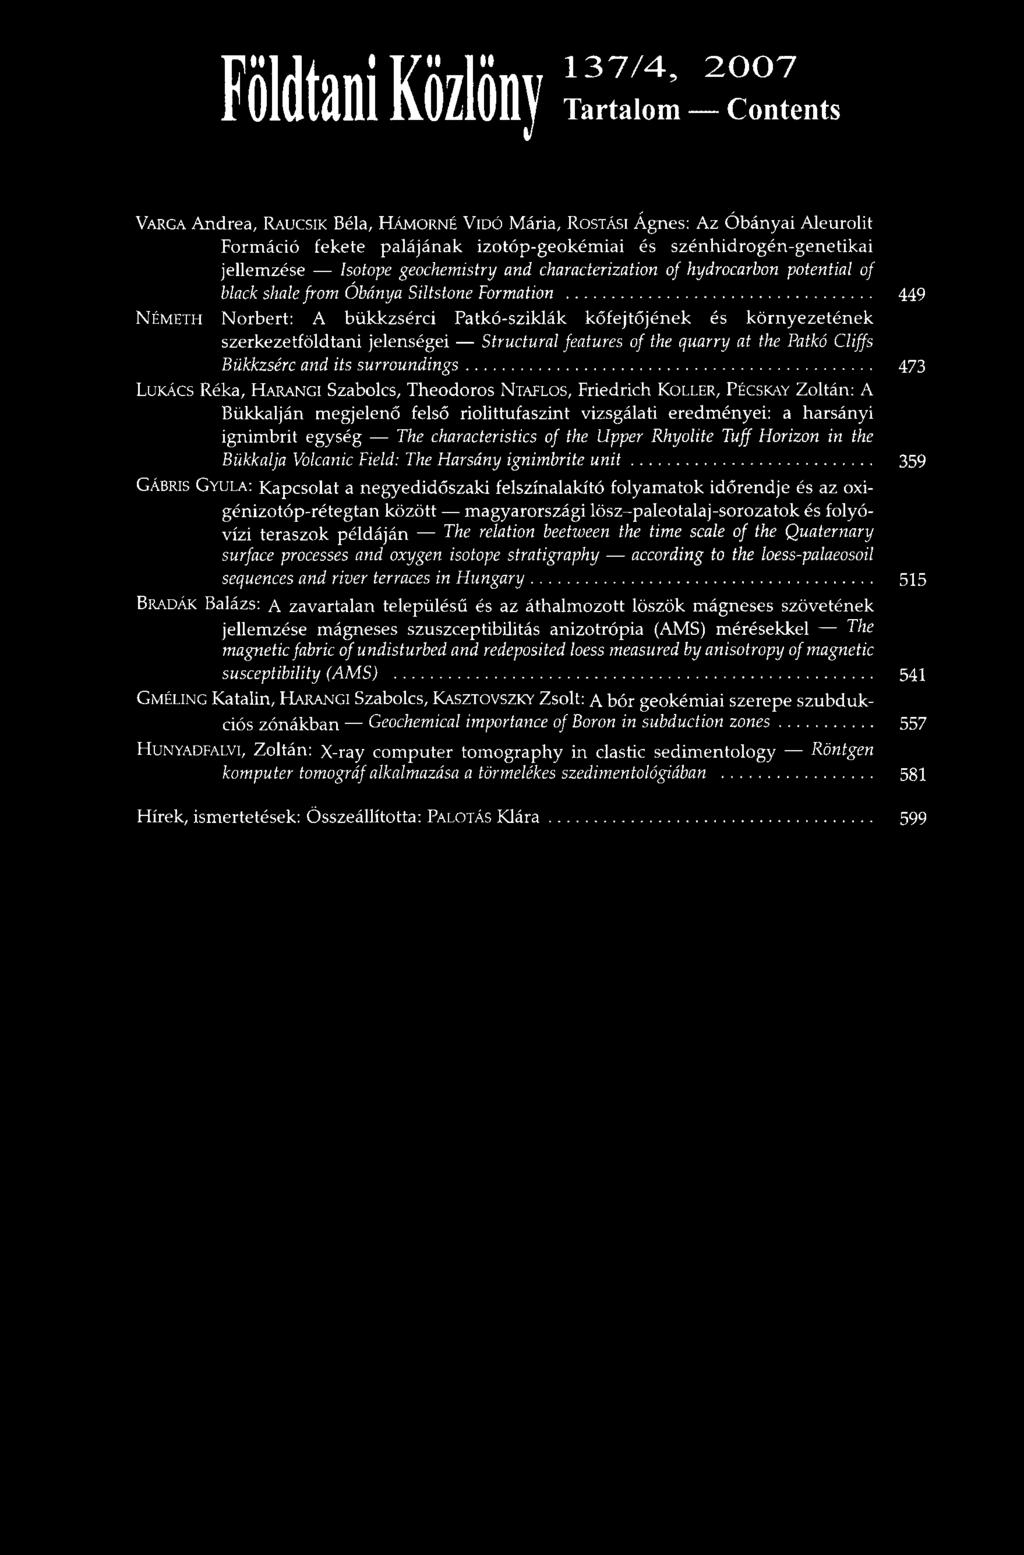 The Harsány ignimbrite unit 359 GÁBRIS GYULA: Kapcsolat a negyedidőszaki felszínalakító folyamatok időrendje és az oxigénizotóp-rétegtan között magyarországi lösz-paleotalaj-sorozatok és folyóvízi